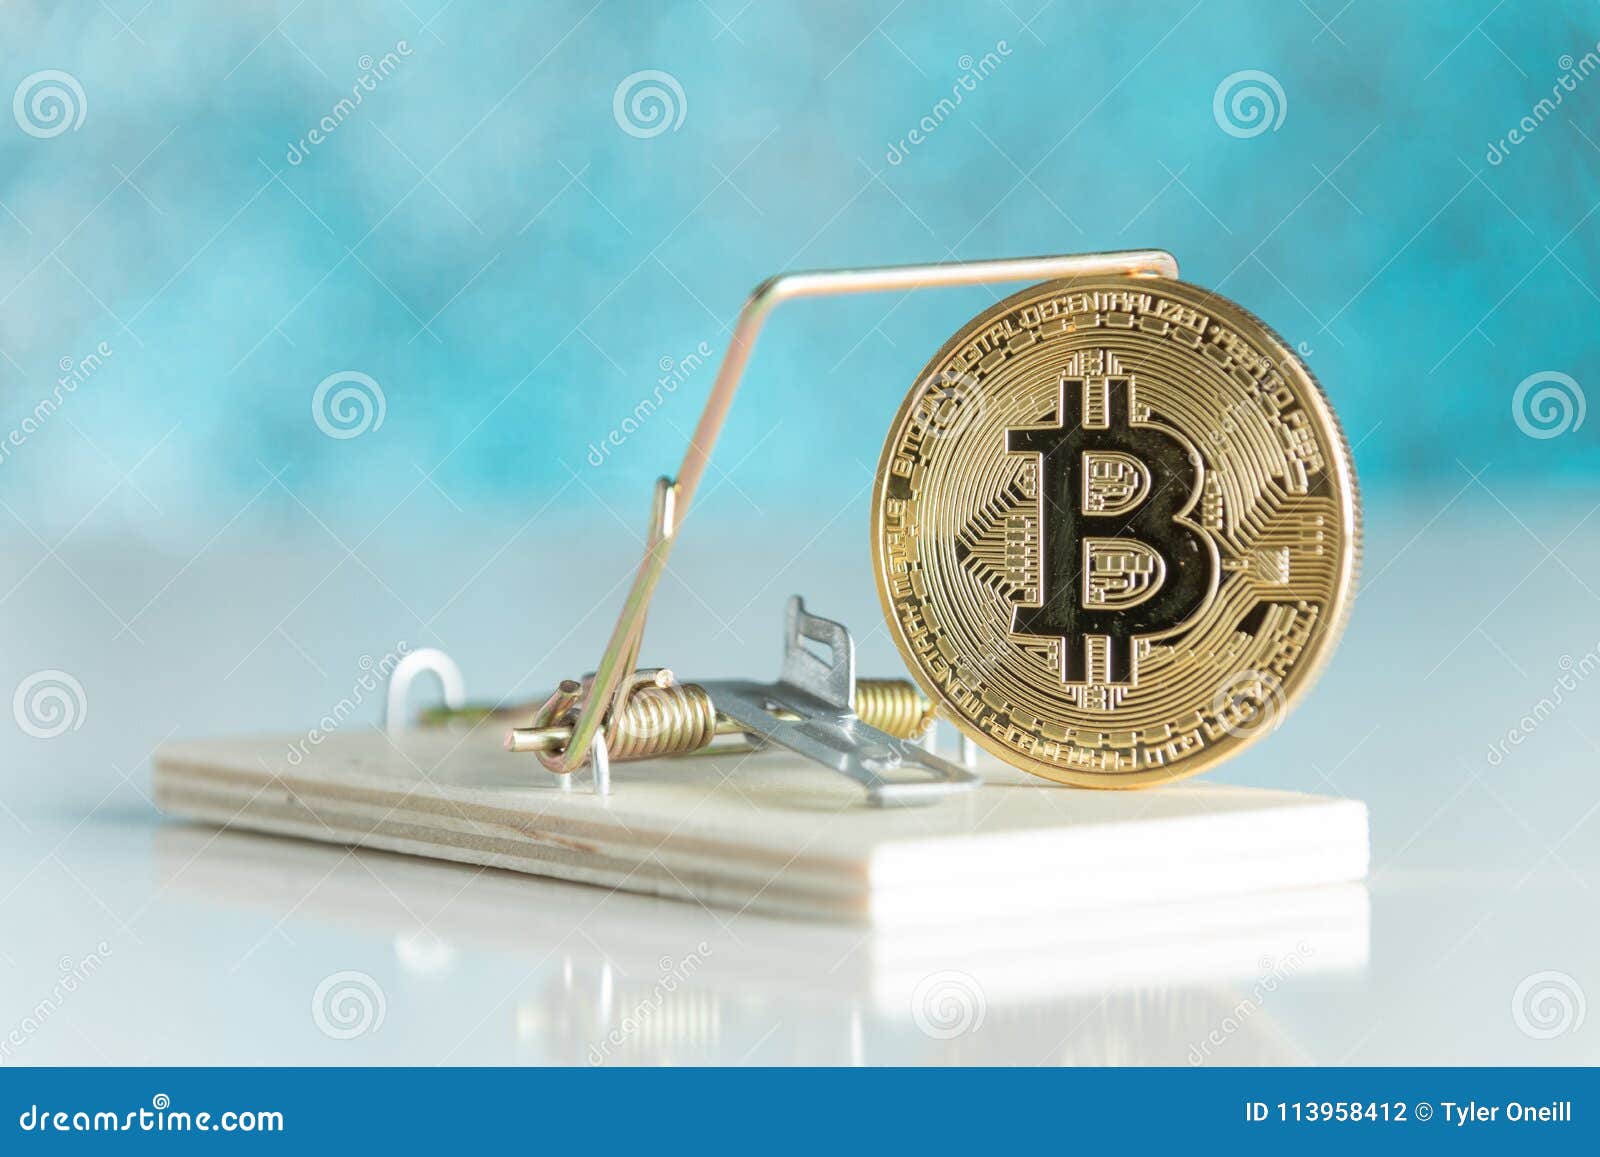 power crypto coin